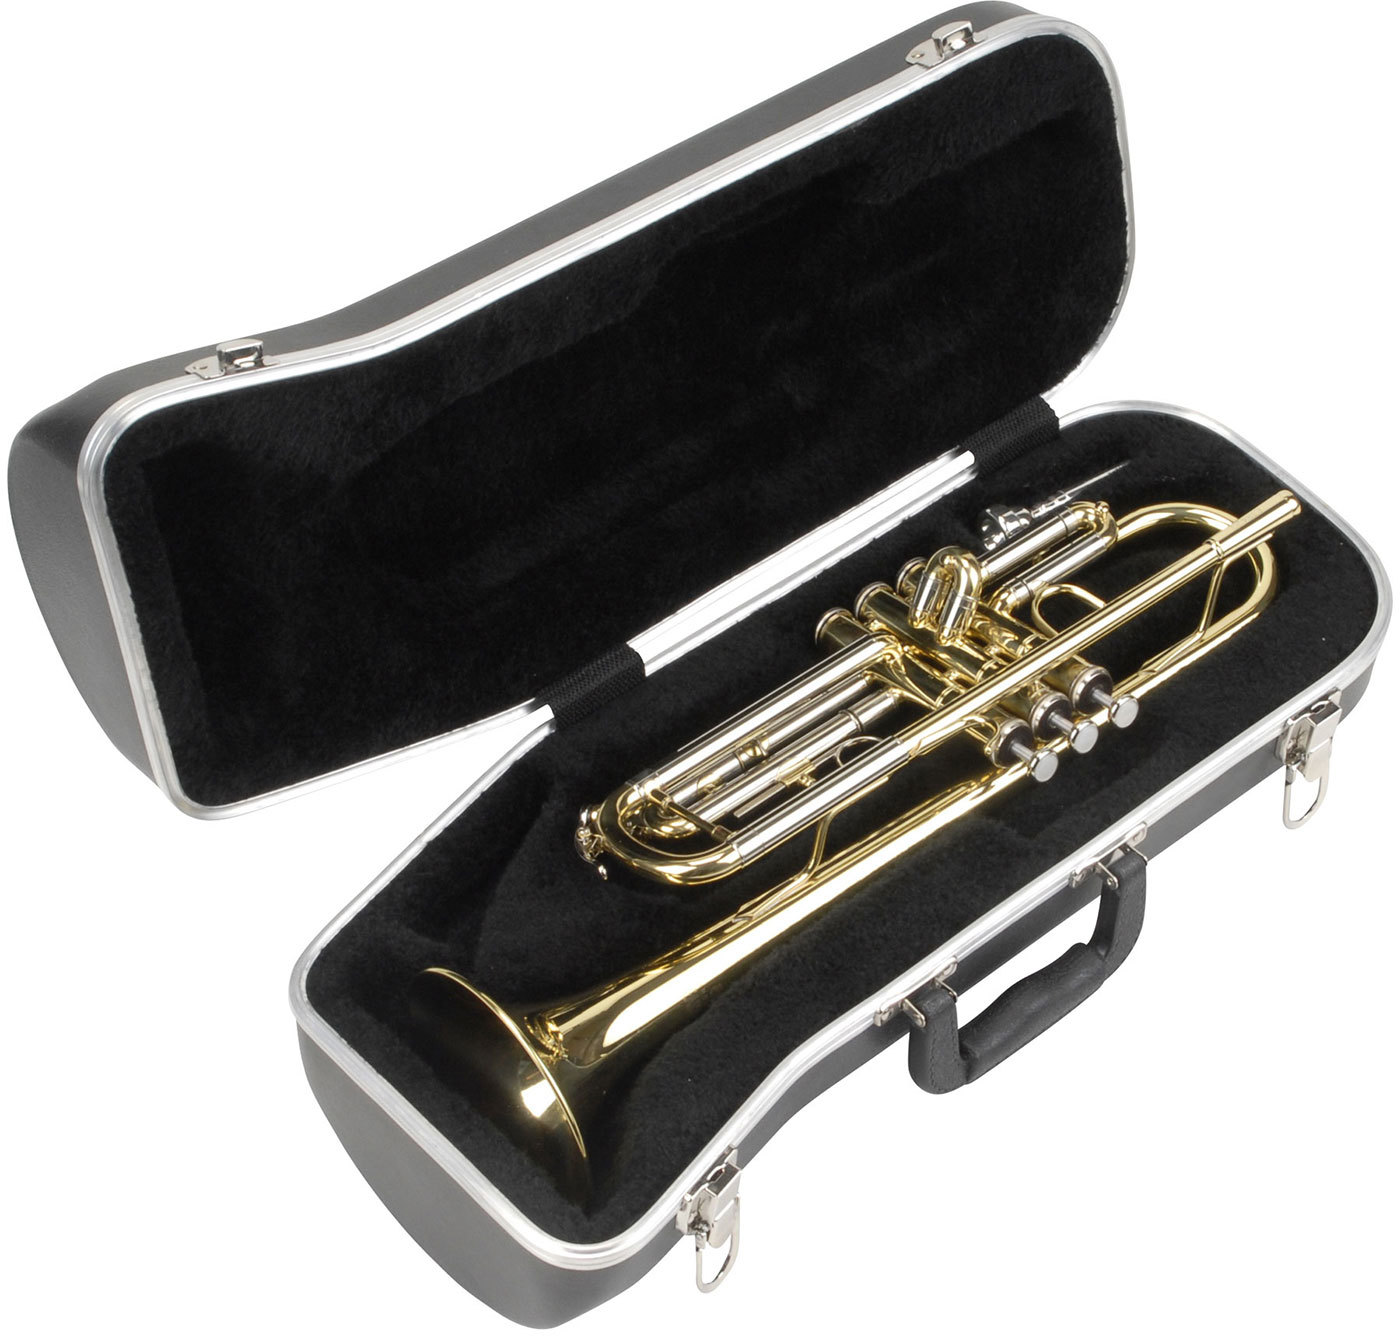 Чехол для музыкального инструмента. SKB 130 кейс для трубы, контурный. SKB 130 кейс для трубы. Чехол для трубы SKB. SKB Case для скрипки.